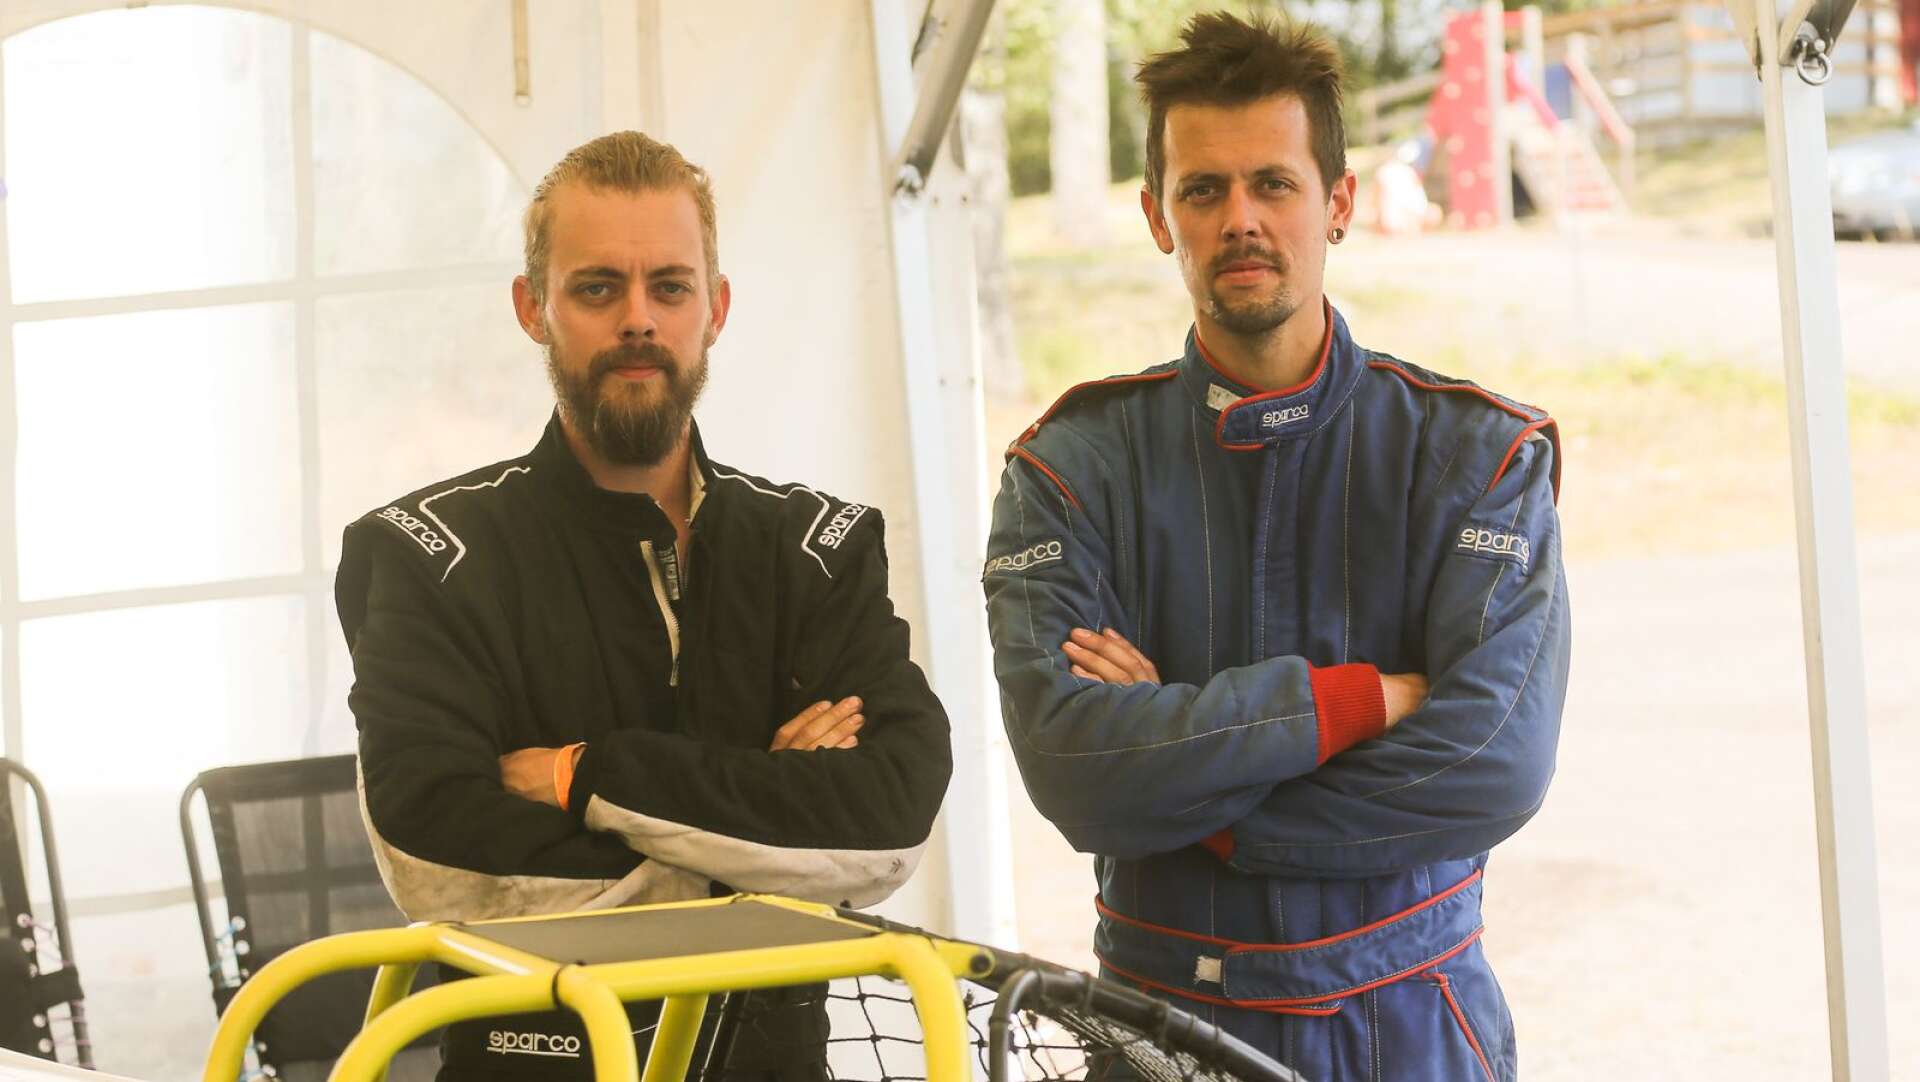 Bröderna Eriksson, till vänster Benny som körde sin tredje tävling denna helg med en god åttondeplats i B-finalen och till höger Fredrik, med lite mer rutin, som tar hem klassvinsten i 650cc-klassen.